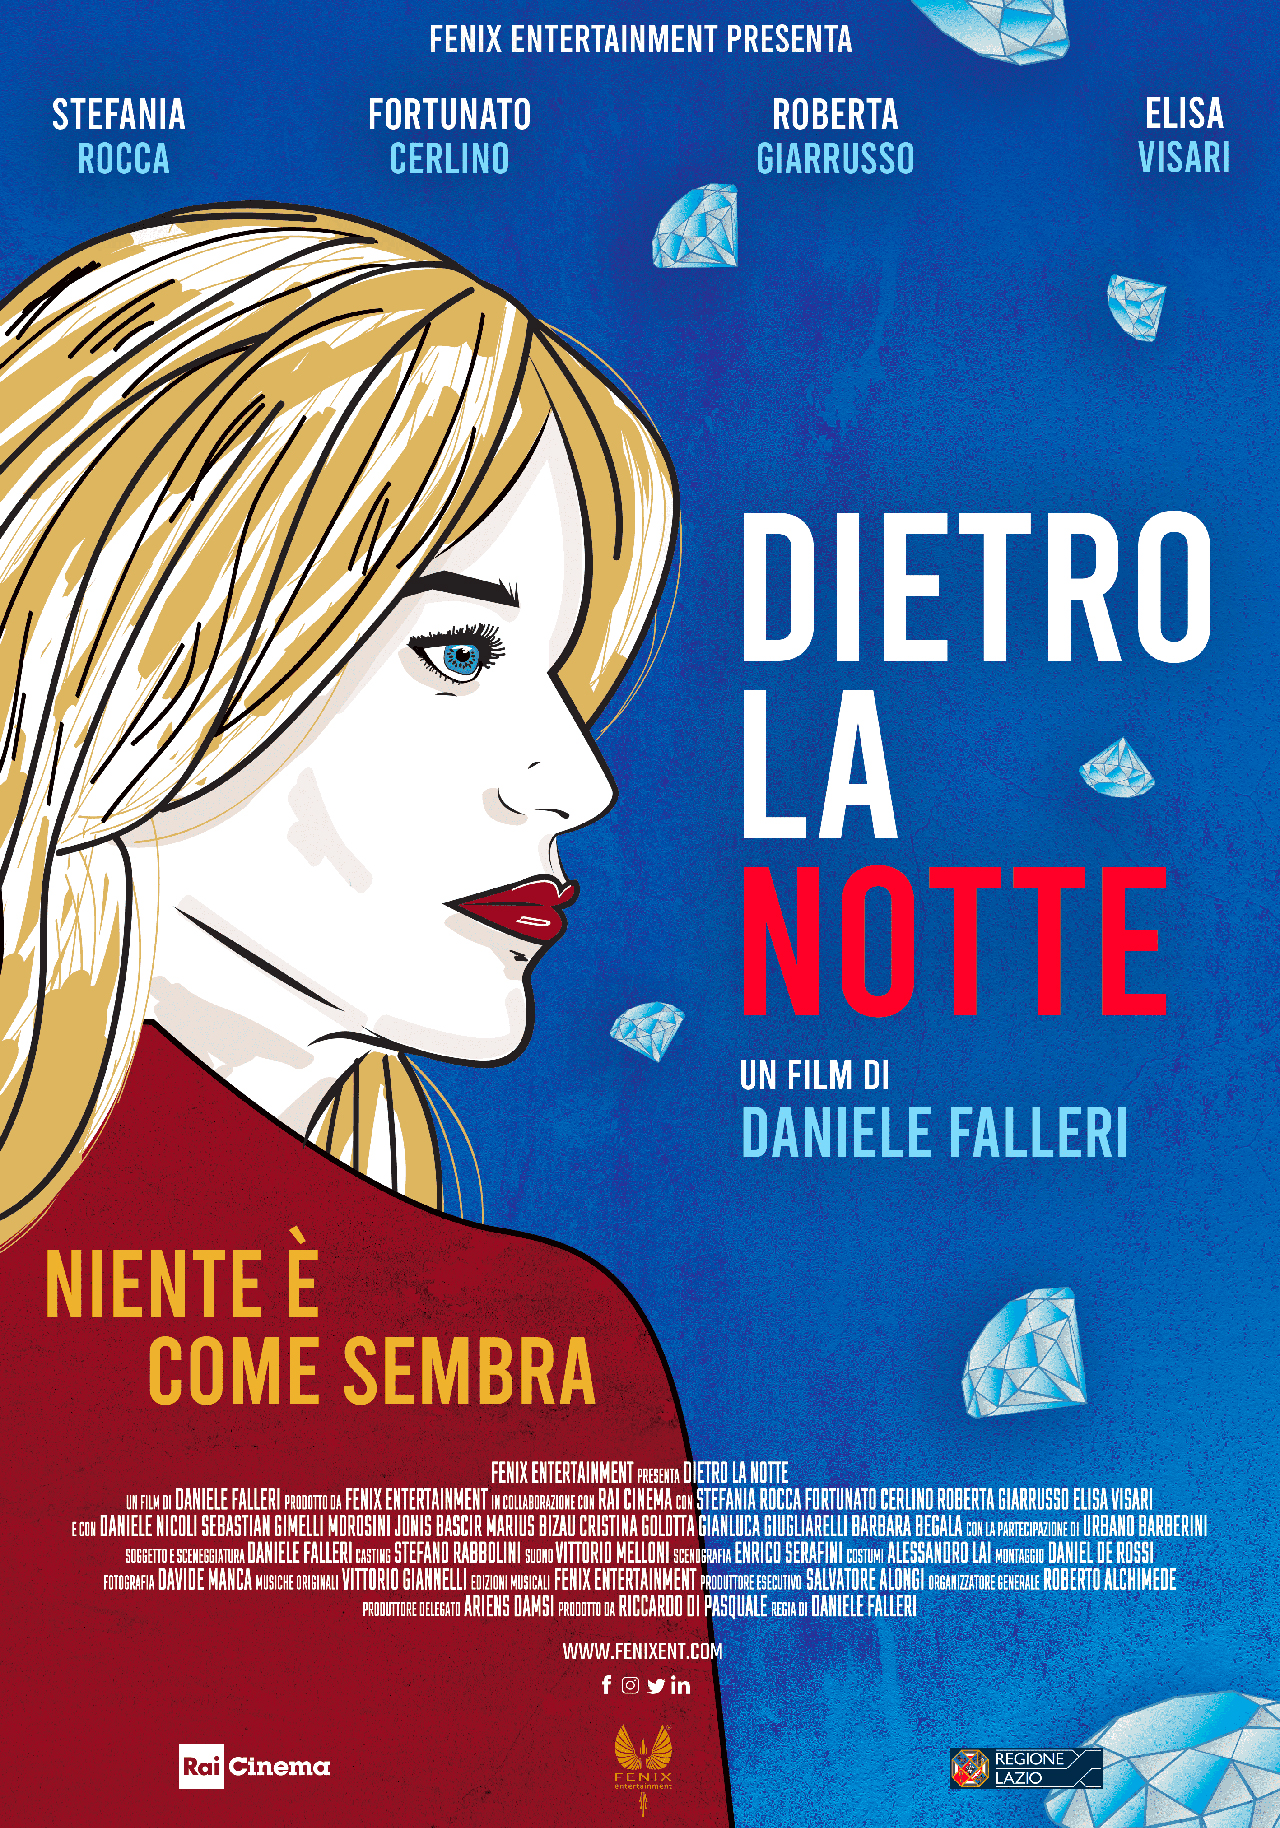  Dall'articolo: Dietro la notte, il poster ufficiale del film di Daniele Falleri.